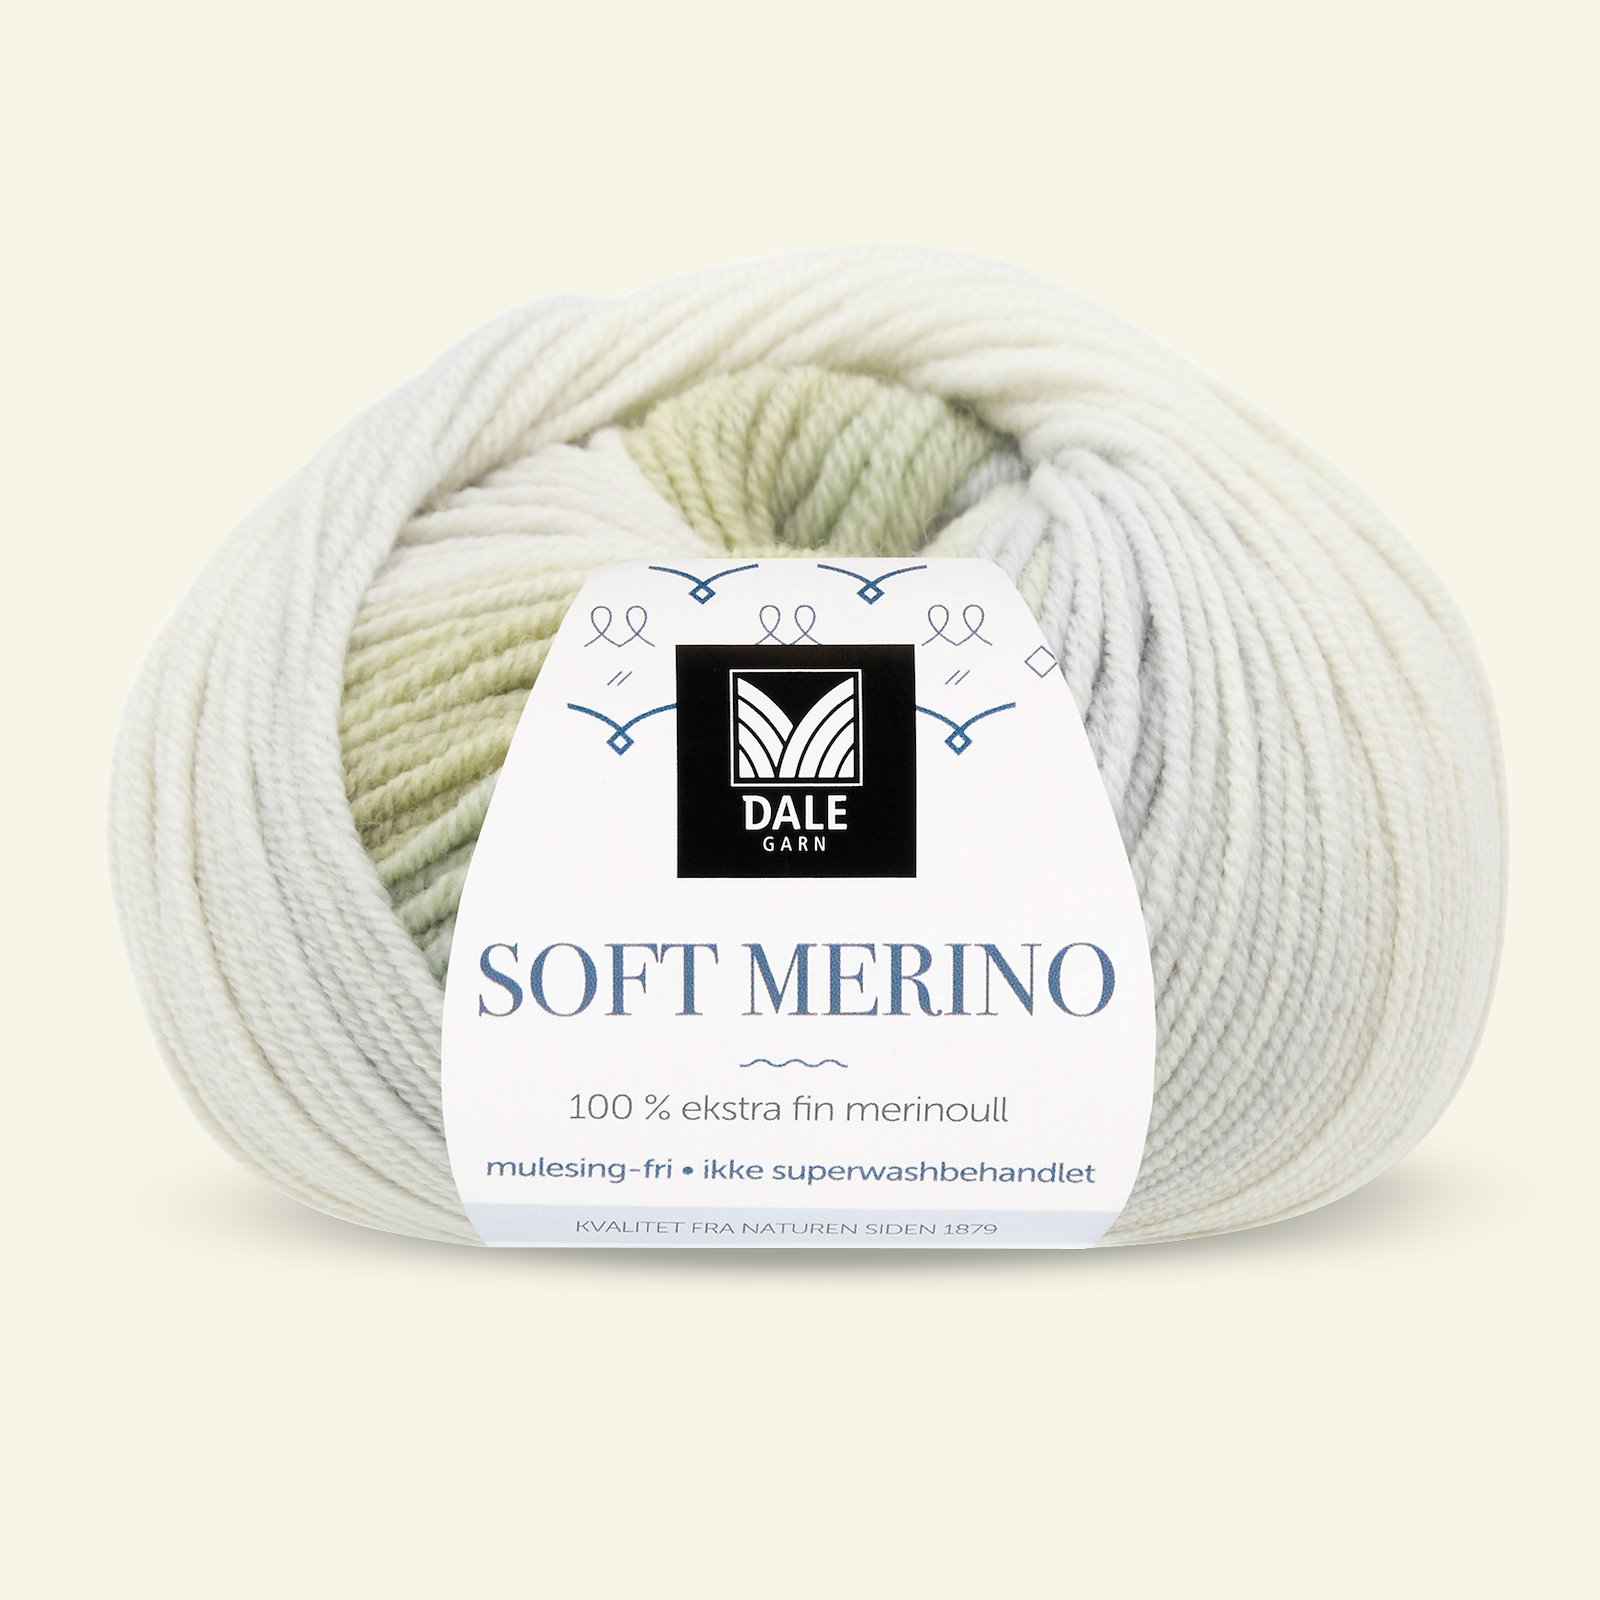 Dale Garn, 100% Extrafeine Merino-Wolle "Soft Merino", mint printed 90001223_pack